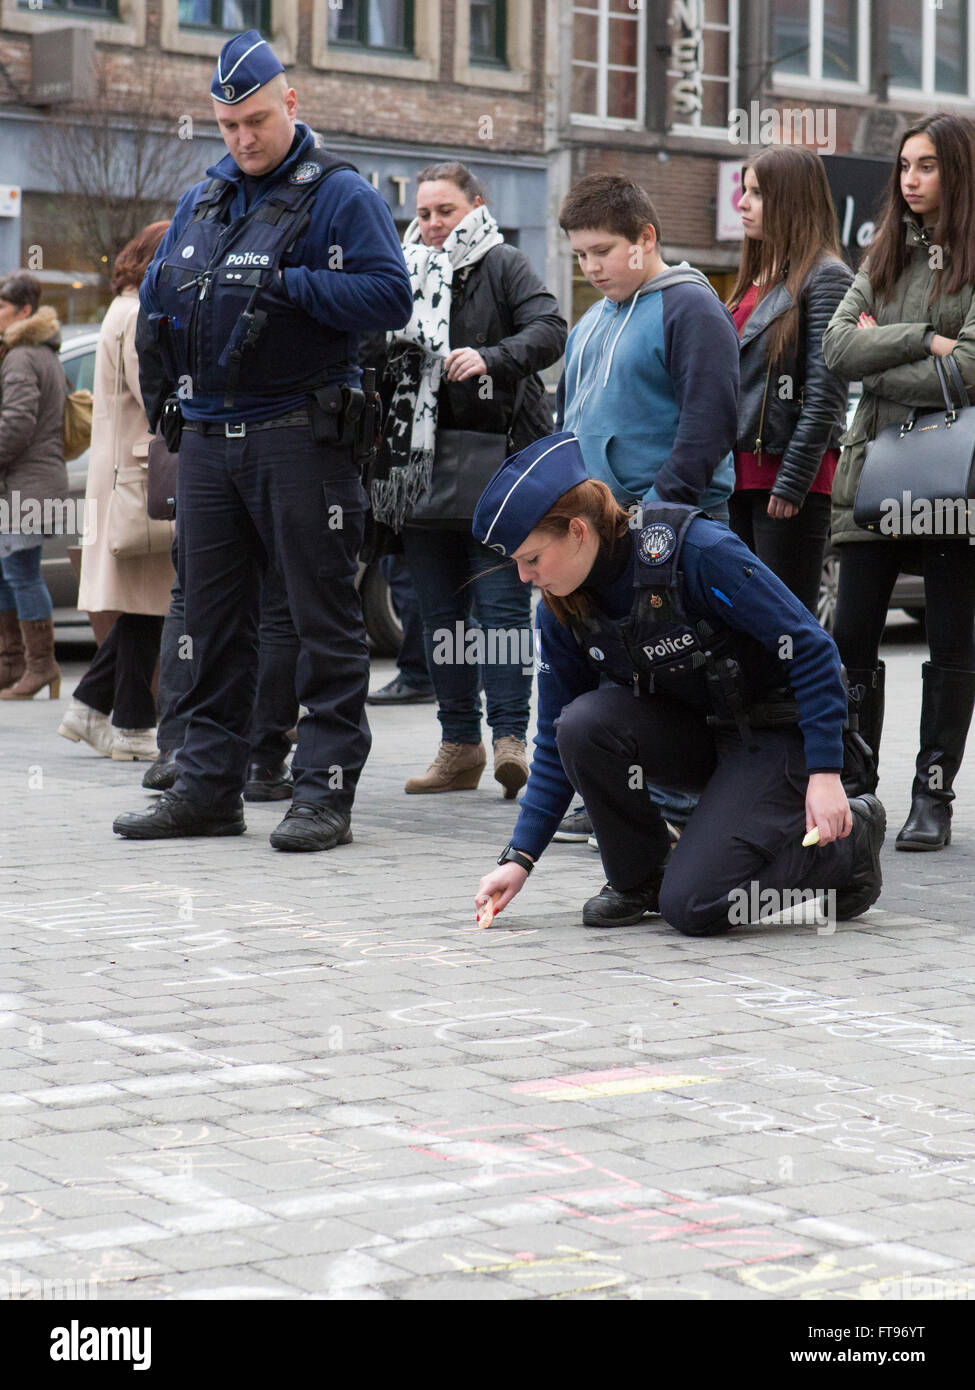 Namur, Bélgica. 25 Mar, 2016. Un oficial de policía dibuja con tiza durante el homenaje a las víctimas de los ataques terroristas del 22 de marzo en Bruselas en Namur, Bélgica. Crédito: Frédéric de Laminne/Alamy Live News Foto de stock